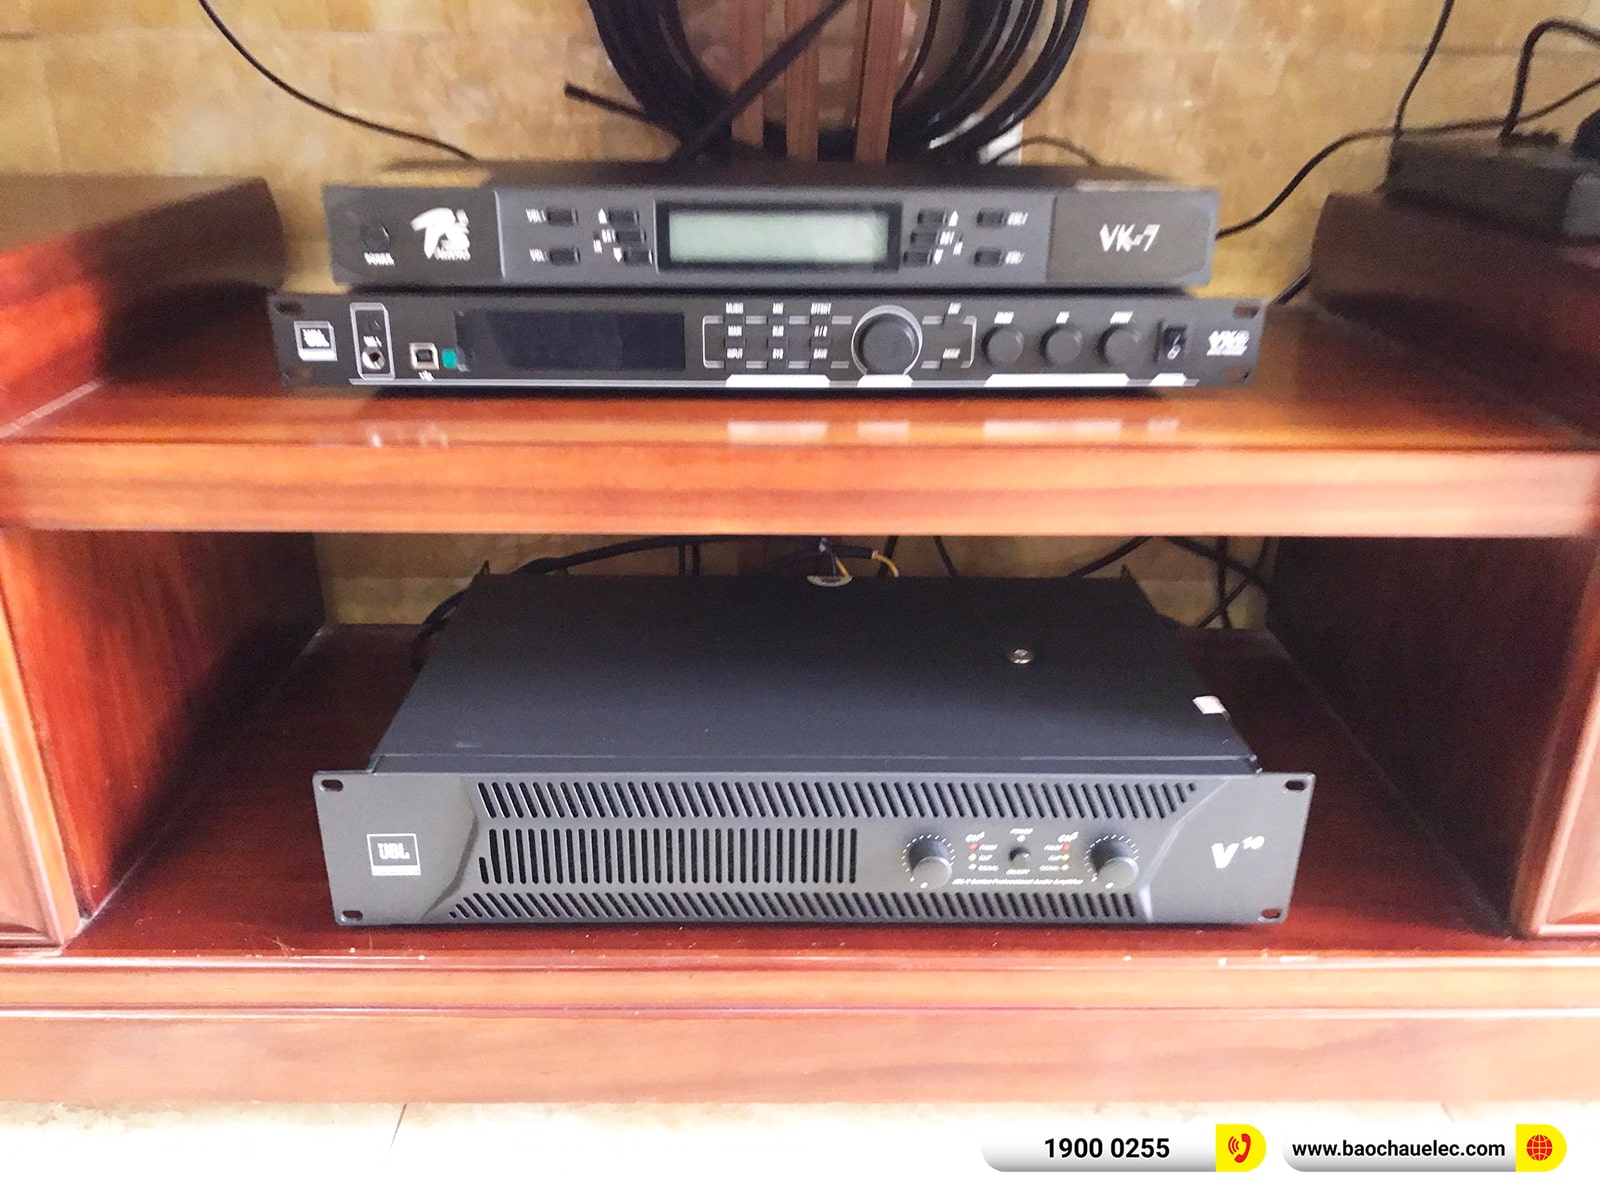 Lắp đặt dàn karaoke JBL hơn 81tr cho anh Phán tại Nam Định (JBL XS12, JBL V10, JBL VX8, Alto TS12S)